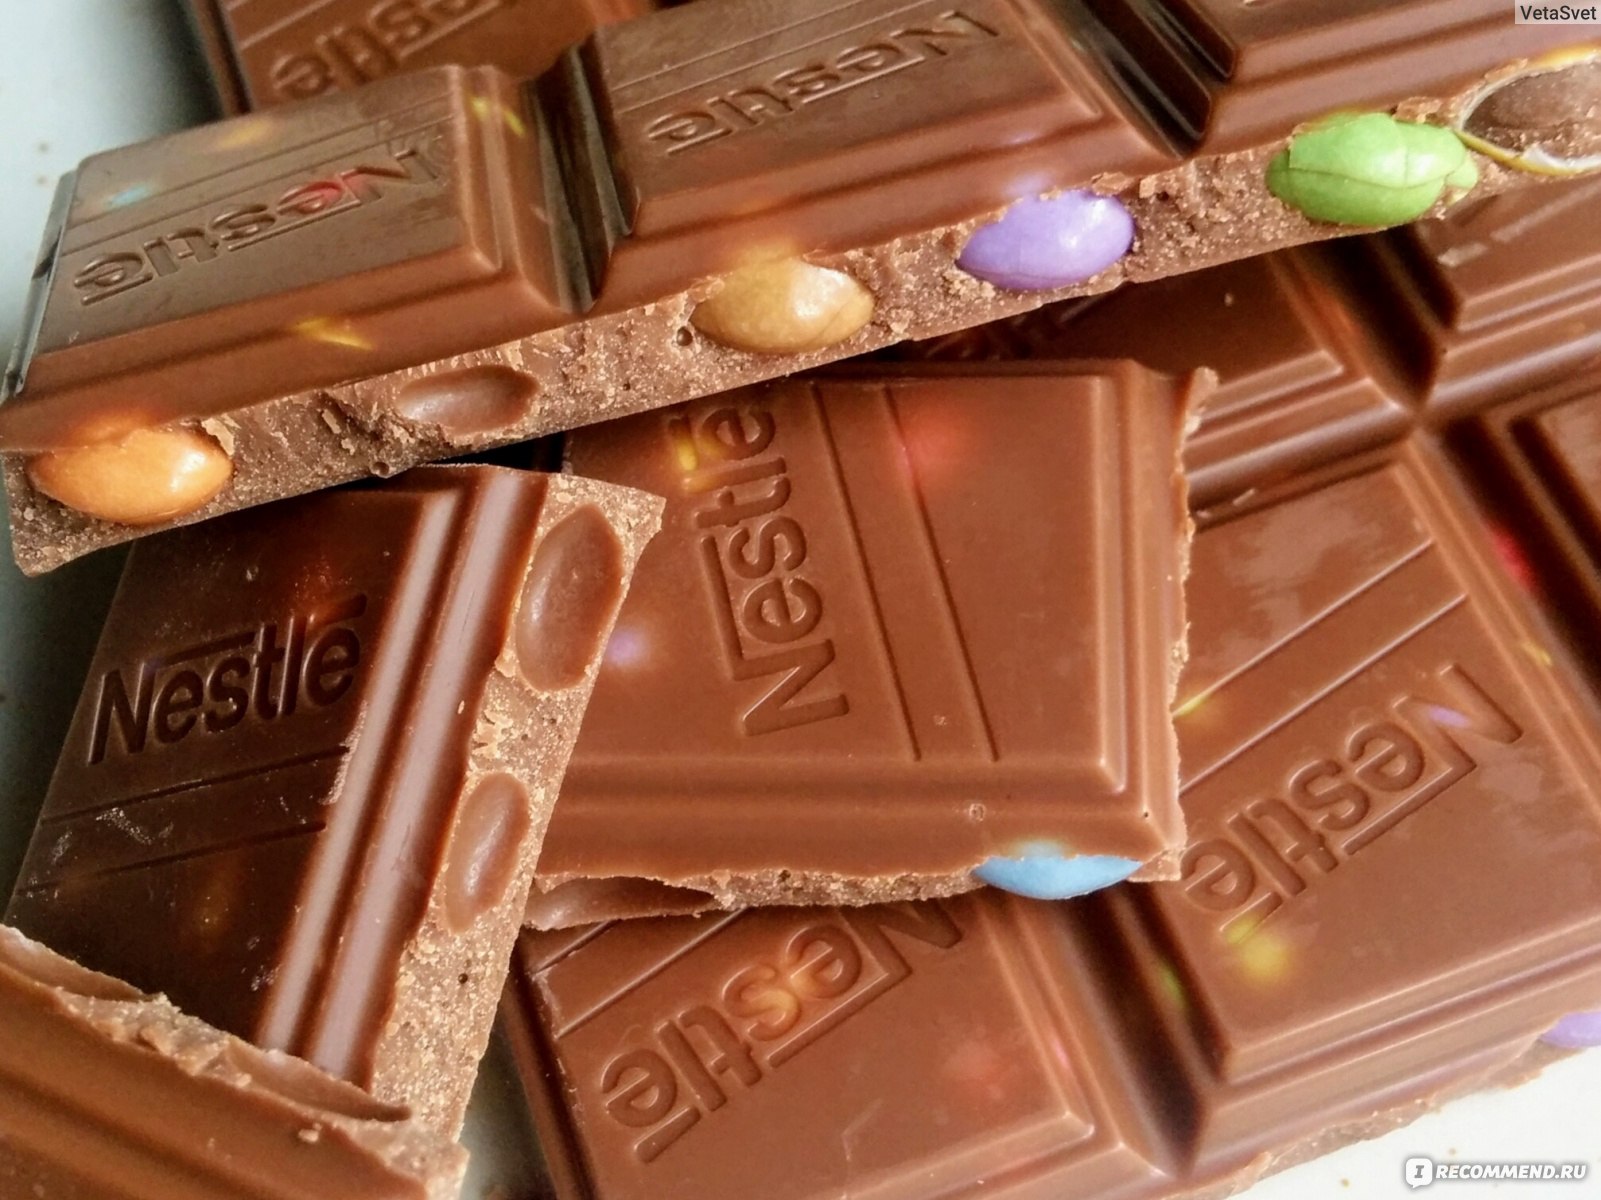 Плитка шоколад Nestle